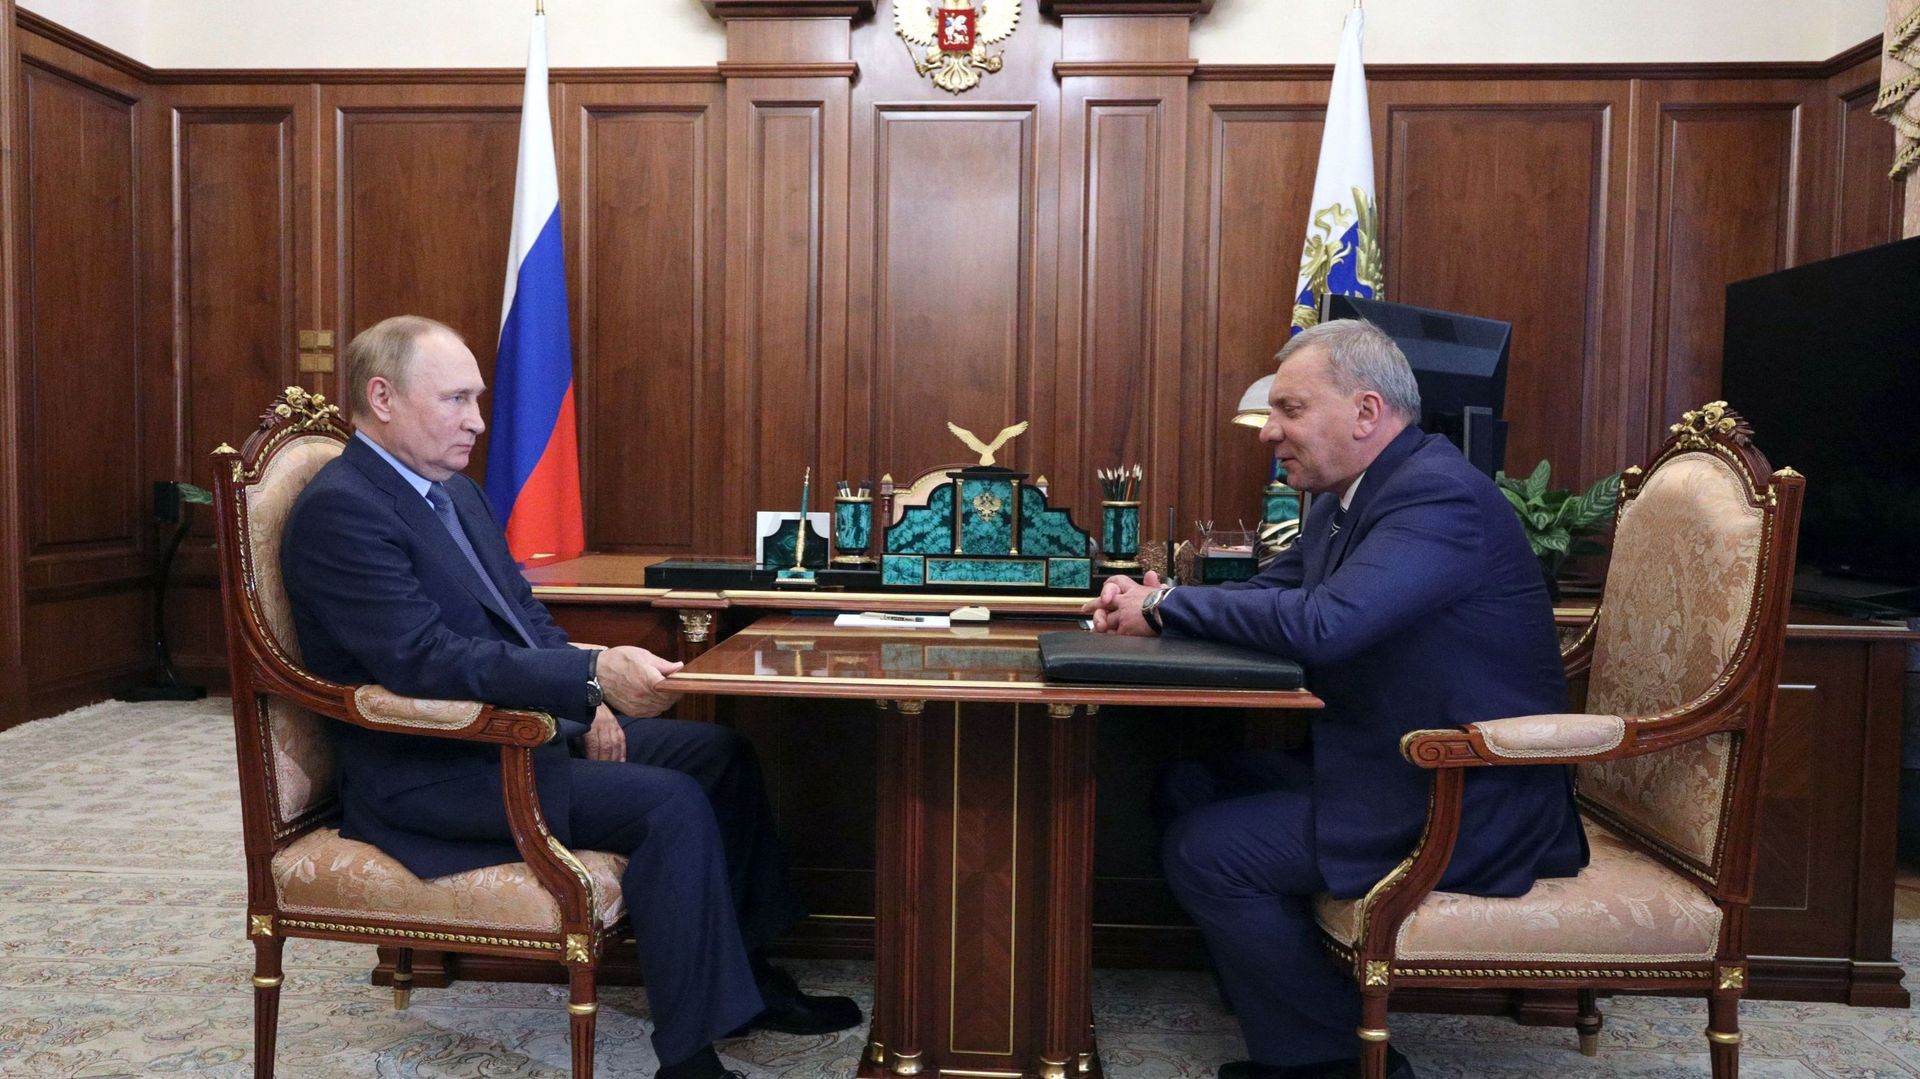 Le président russe Vladimir Poutine rencontre le directeur de l'agence spatiale russe Roscosmos, Iouri Borissov, au Kremlin à Moscou, le 26 juillet 2022.